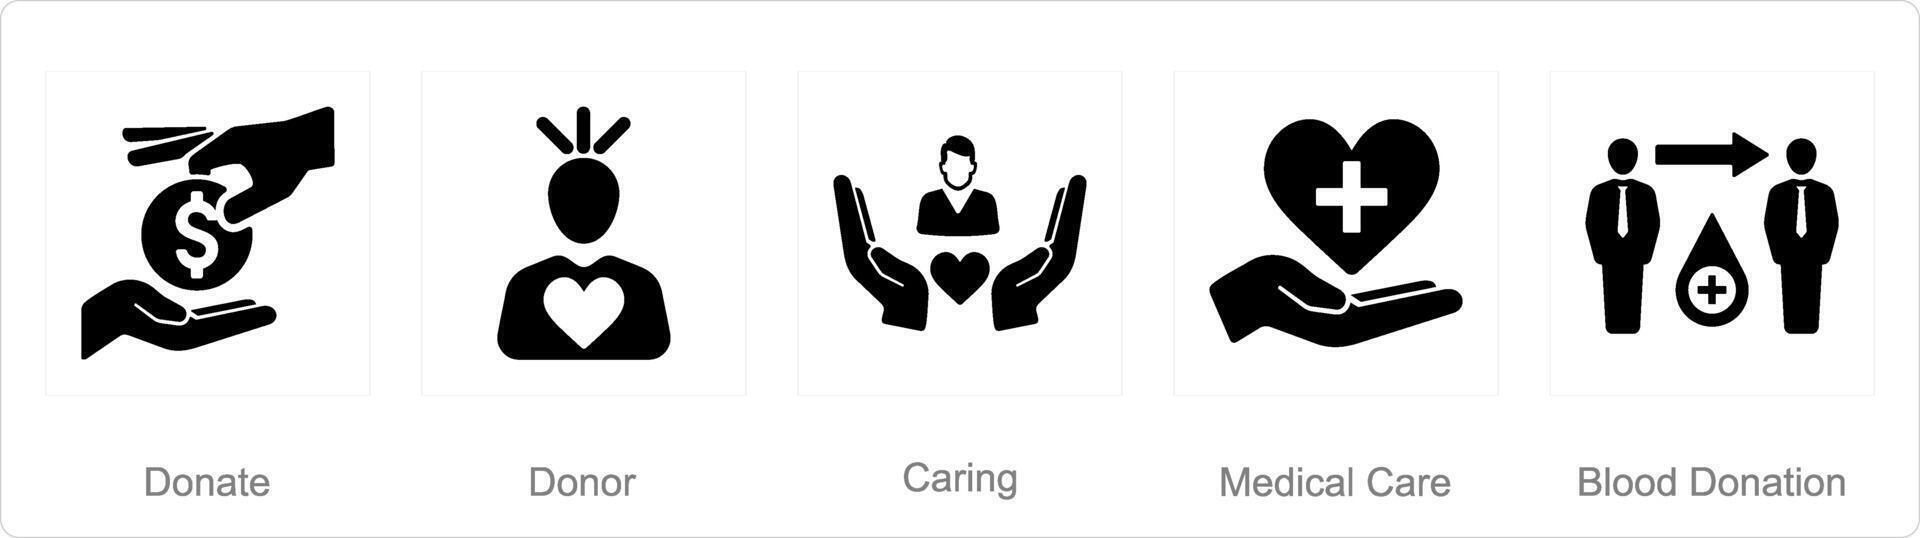 un' impostato di 5 beneficenza e donazione icone come donare, donatore, cura vettore